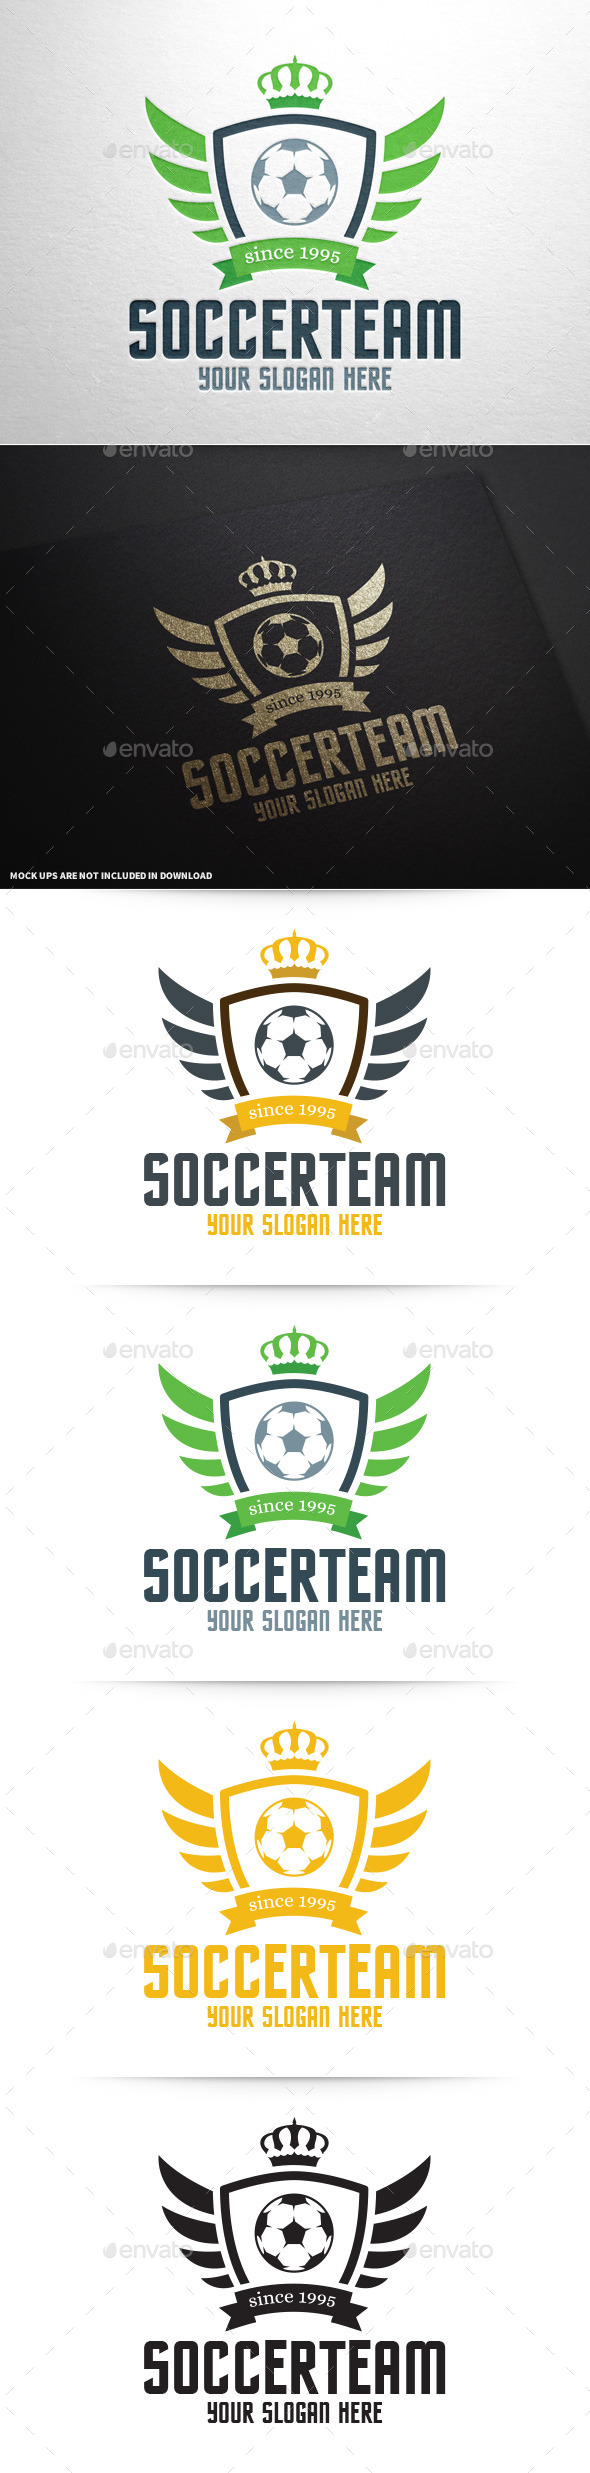 Soccer Team Logo Template